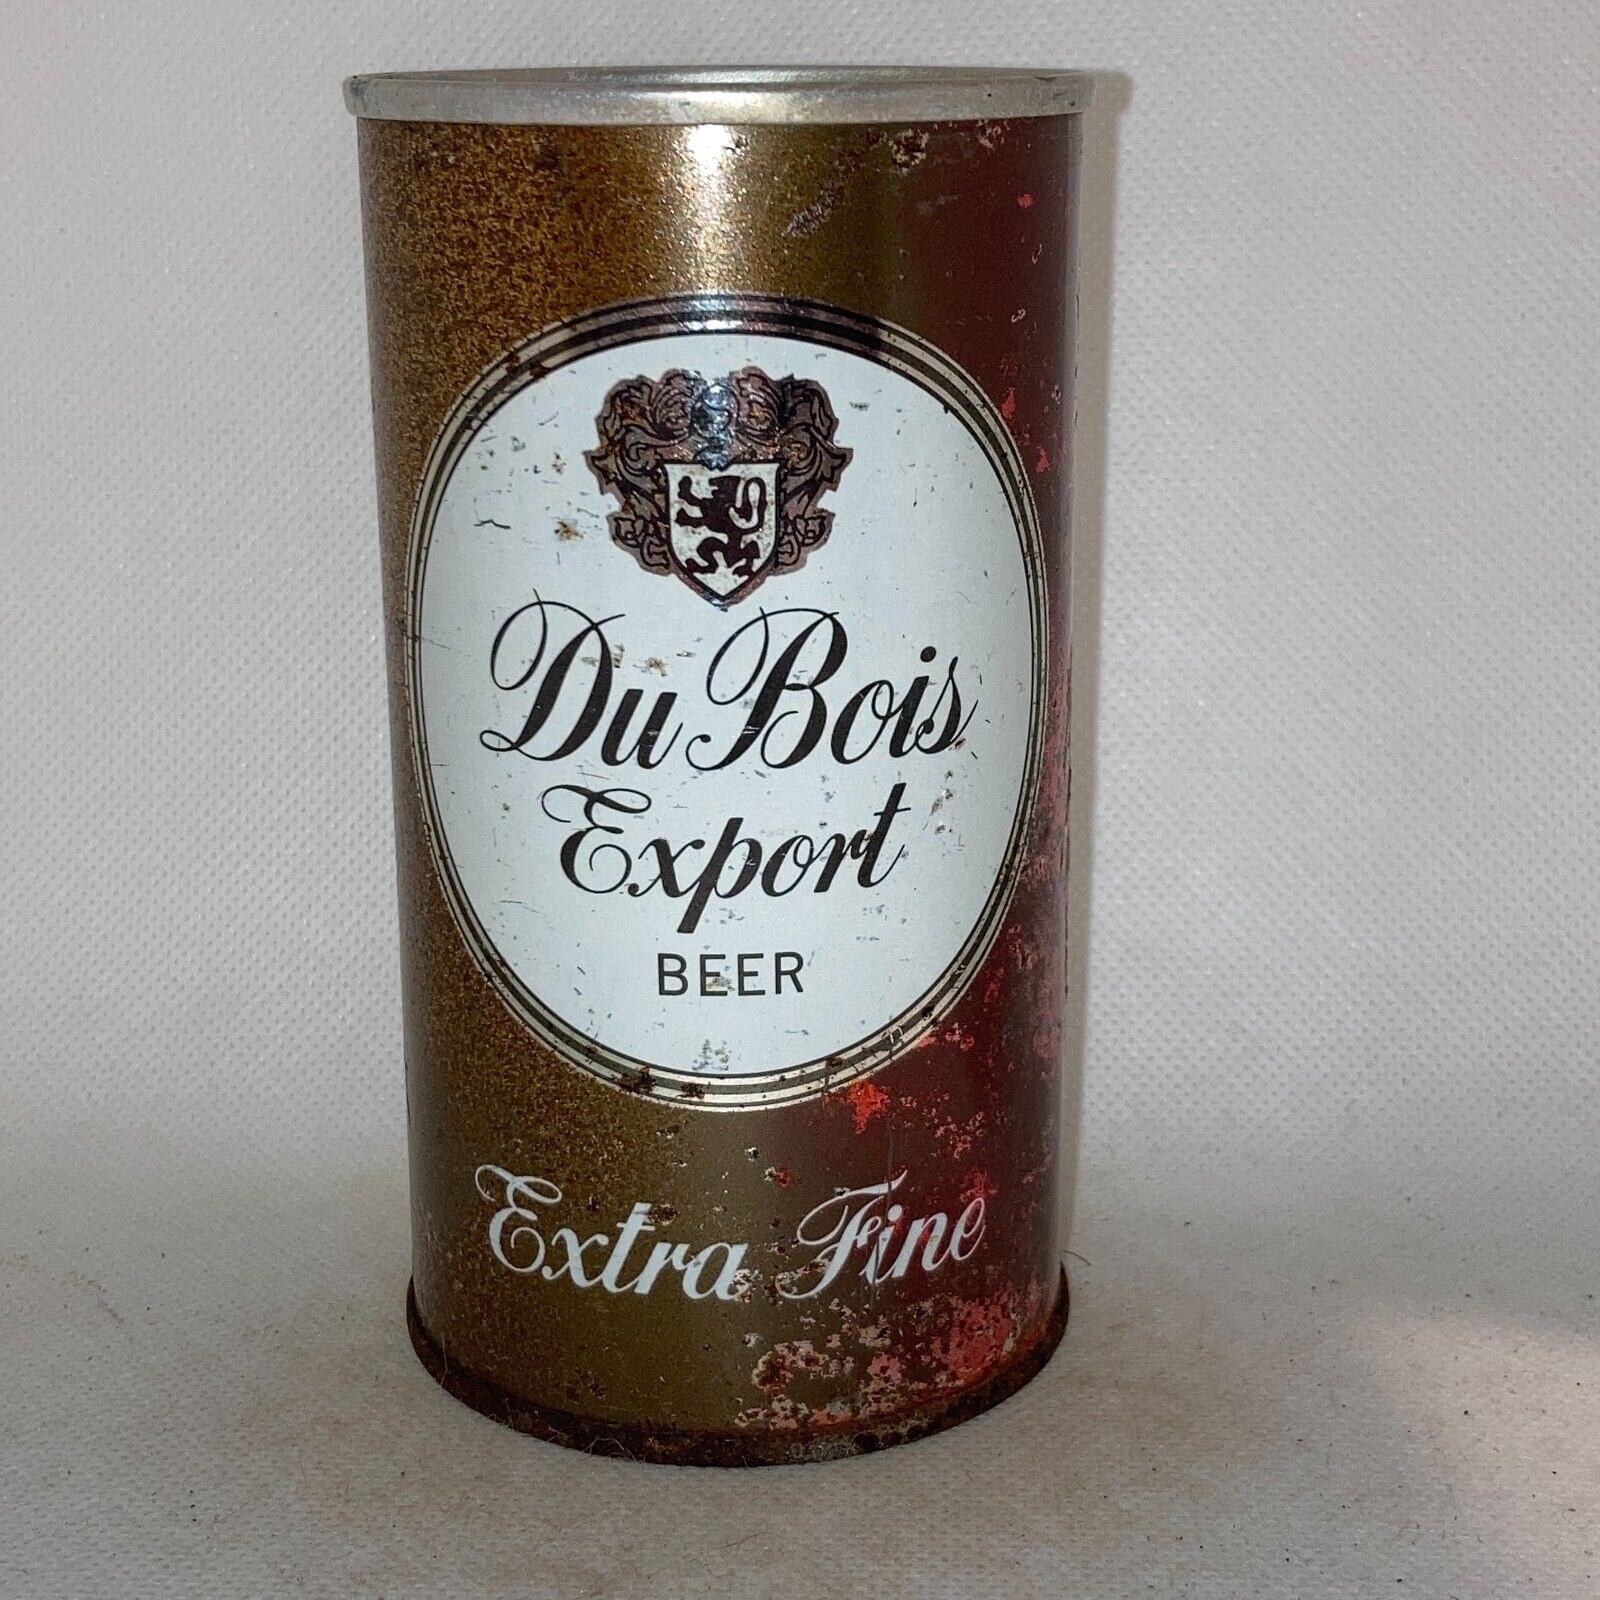 Du Bois Export beer can